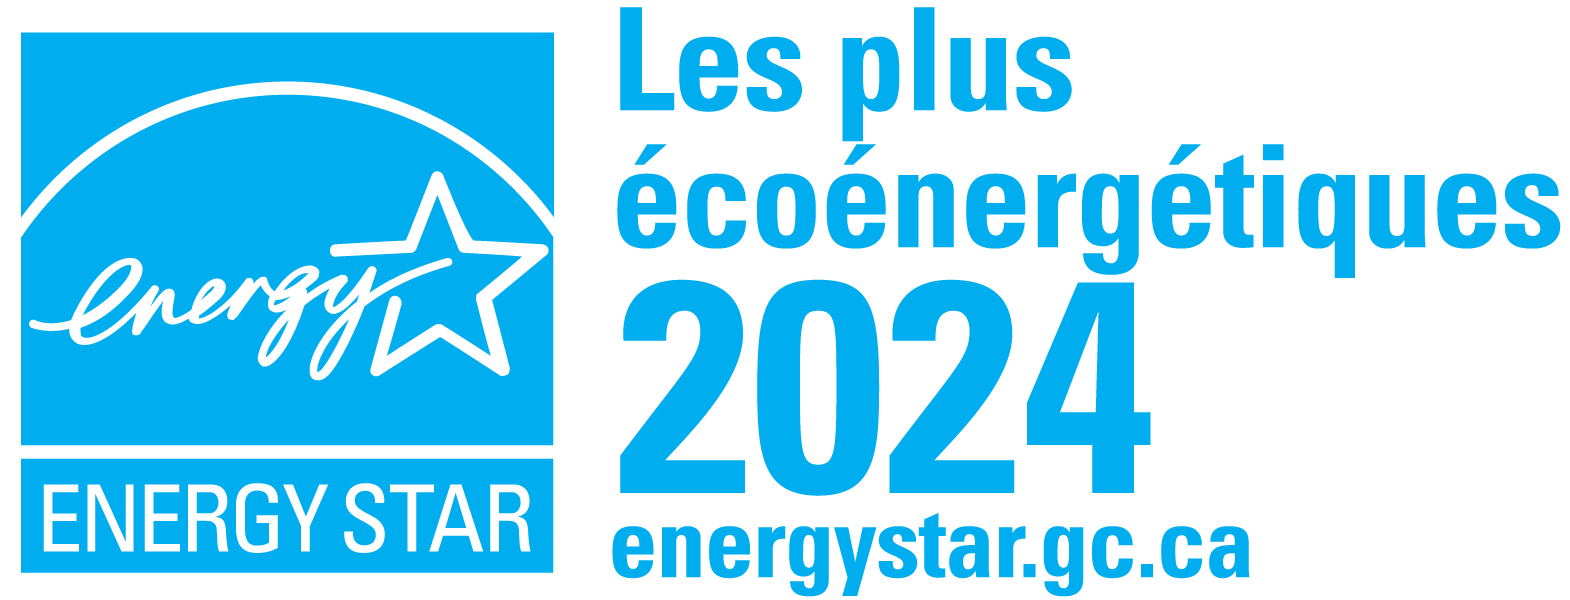 Nos fenêtres ont la cote Efficacité la plus haute d’Energy Star en 2024.